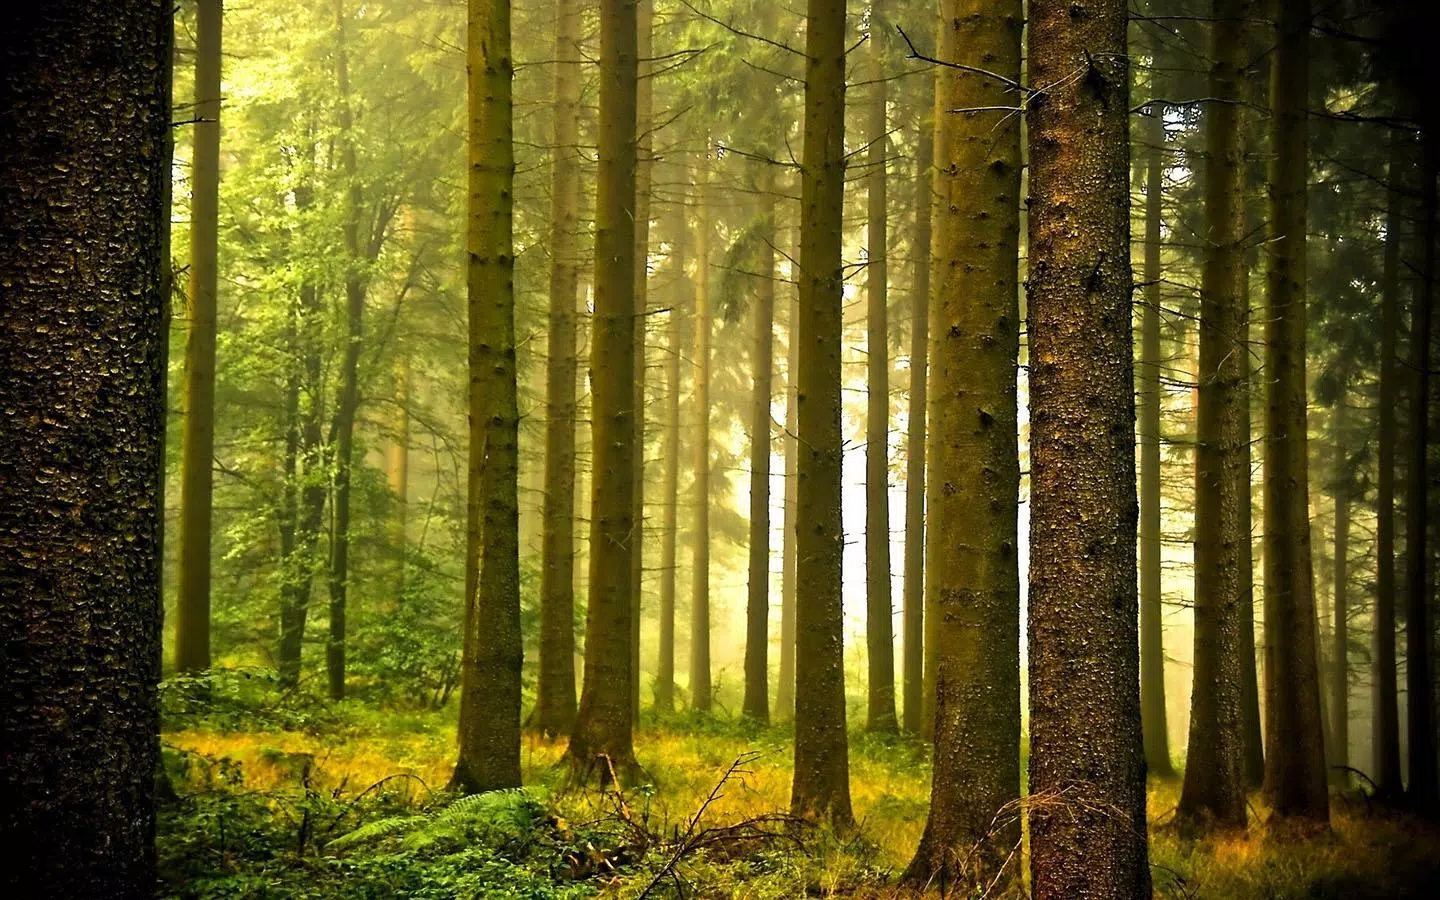 Hình nền rừng: Khám phá thế giới tự nhiên nguyên sơ với hình nền rừng đẹp mắt, nơi hoà quyện giữa sắc xanh tươi mới của cây cối và sự im lặng của thiên nhiên sẽ khiến bạn cảm thấy thư giãn và yên bình dù chỉ trong tí chốc ngắm nhìn hình nền này.